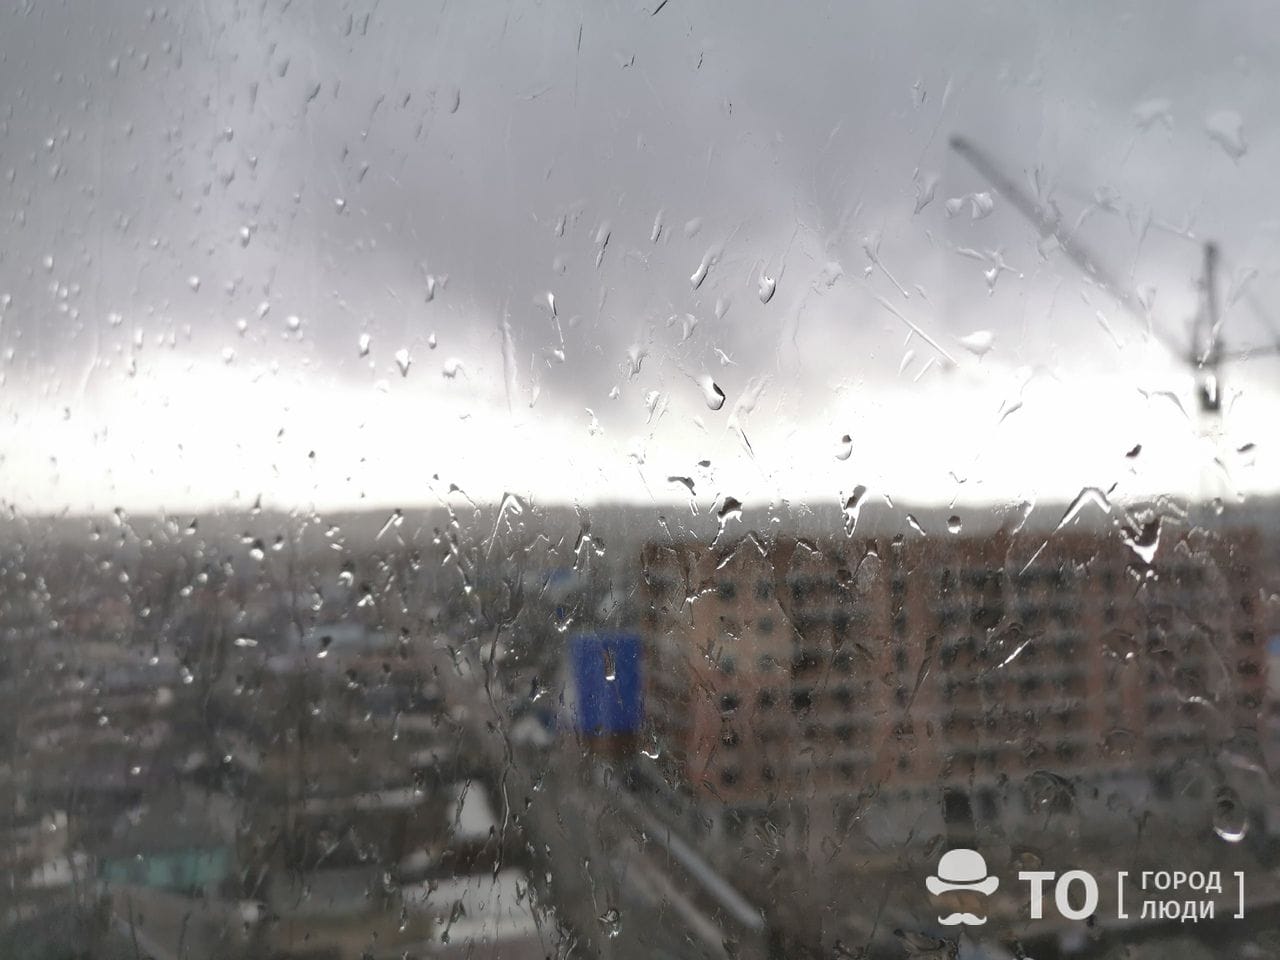 Погода и природа, Стихия в Томске и области, Томские новости, прогноз погоды погода в Томске похолодание штормовое предупреждение прогноз погоды погода на завтра На днях томичей ждет дождь, мокрый снег и сильный ветер